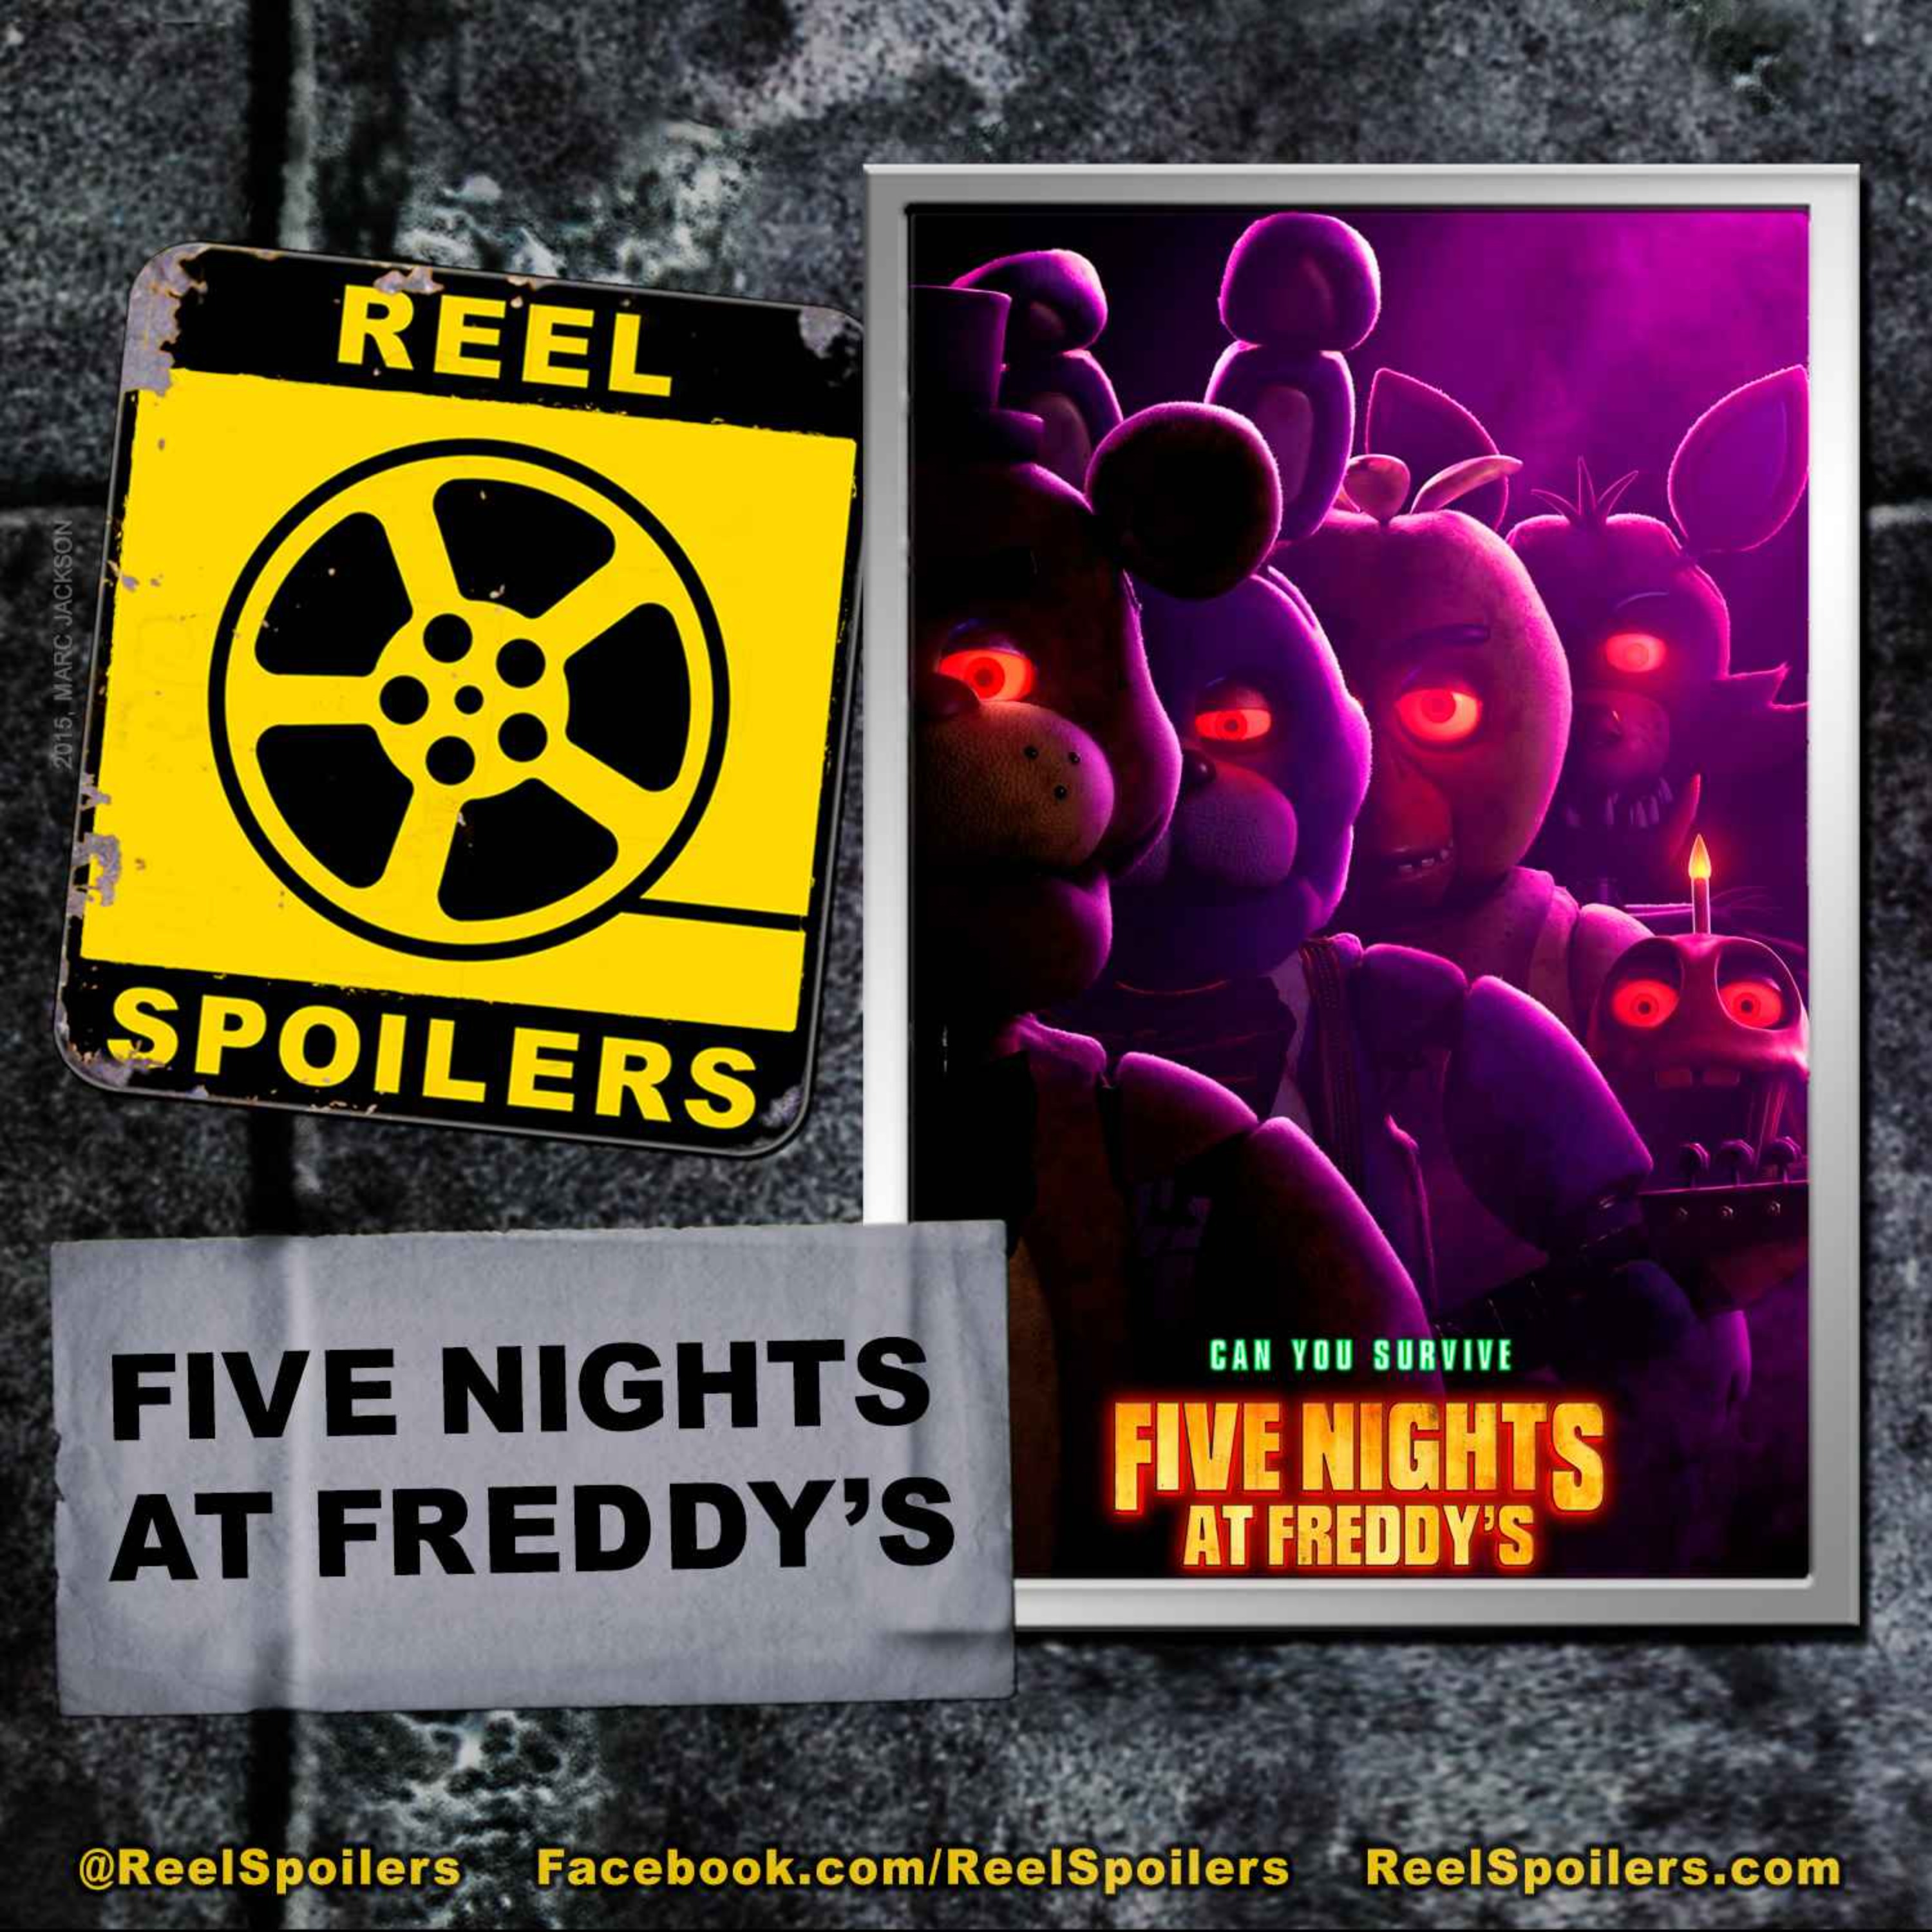 FIVE NIGHTS AT FREDDY’S Starring Josh Hutcherson, Elizabeth Lail, Matthew Lillard